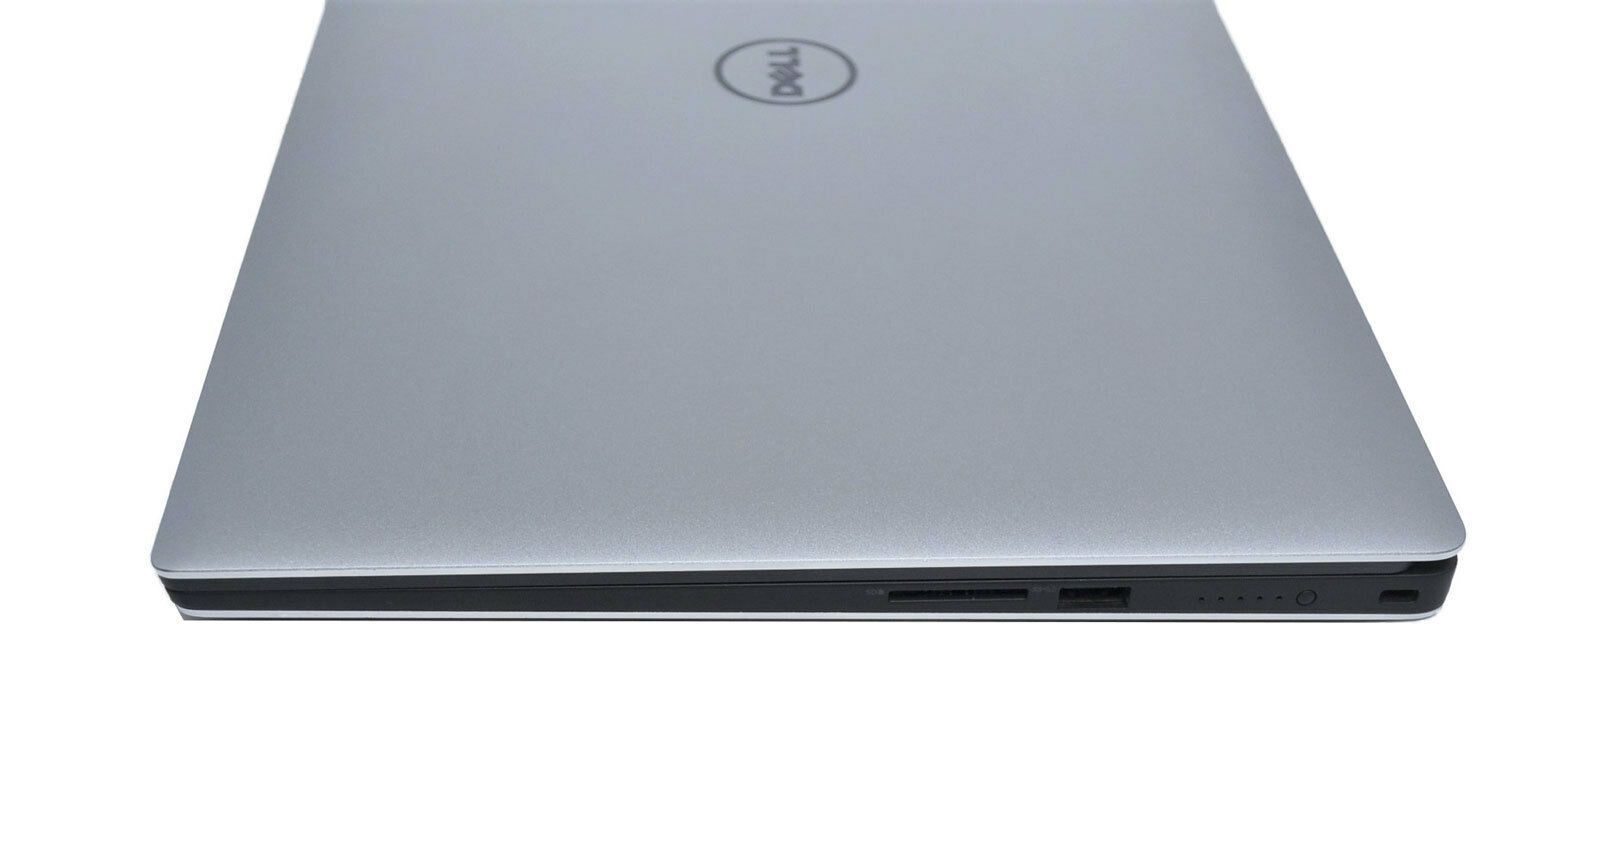 Dell Precision 5520 CAD Laptop: Core i7-7820HQ, 32GB RAM, Quadro, 1.9KG - CruiseTech